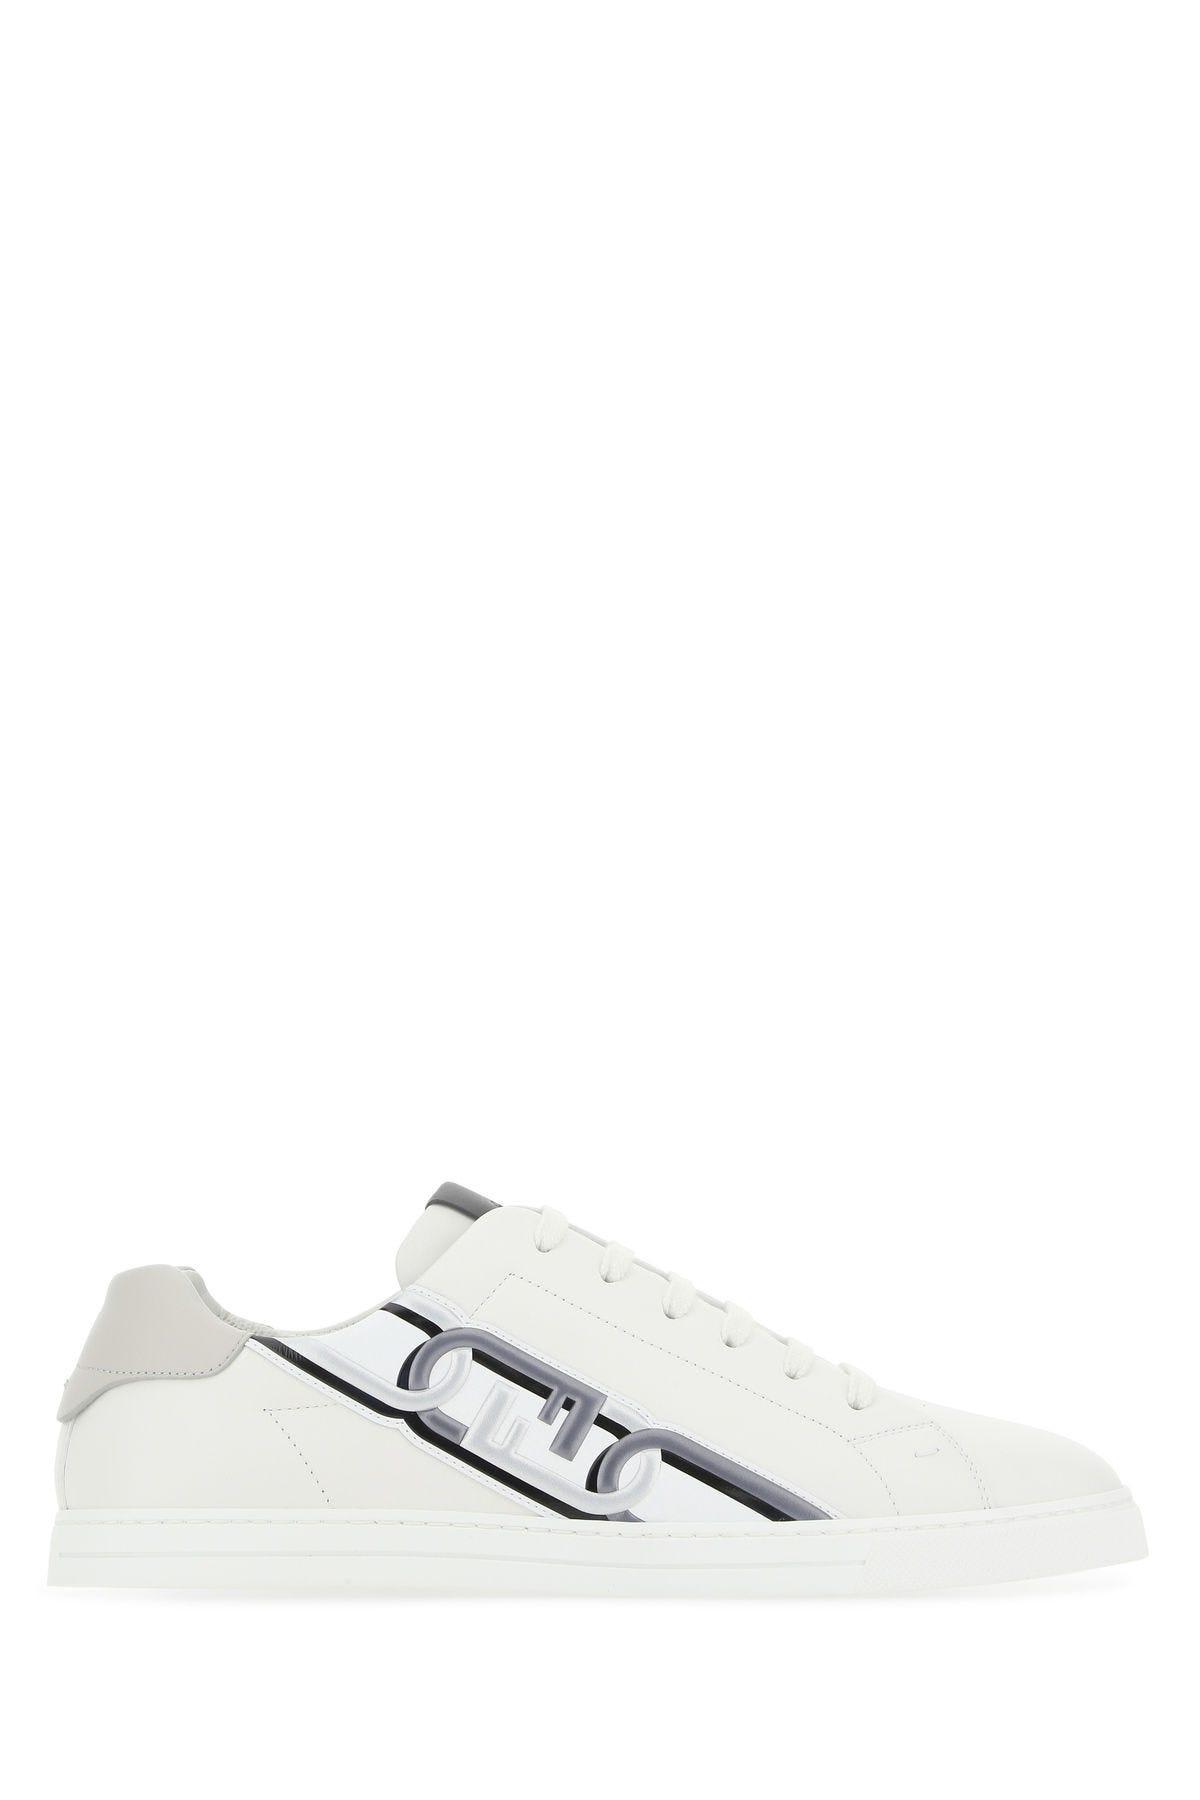 Fendi White Leather Sneakers